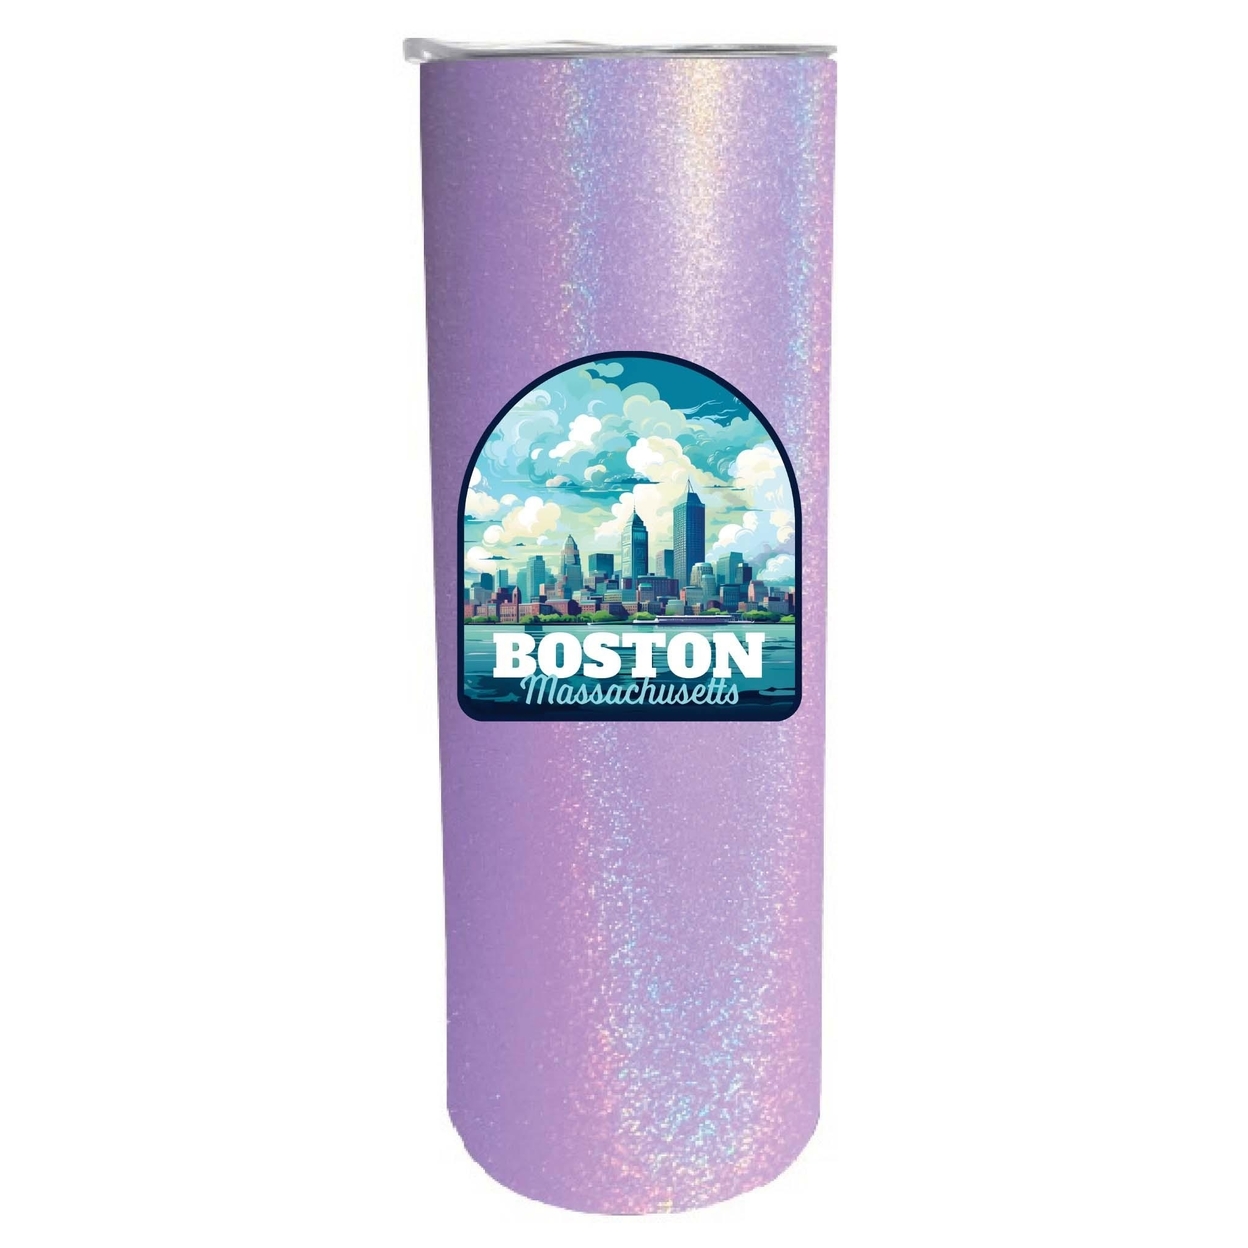 Boston Massachusetts A Souvenir 20 Oz Insulated Skinny Tumbler Glitter - Purple Glitter,,4-Pack